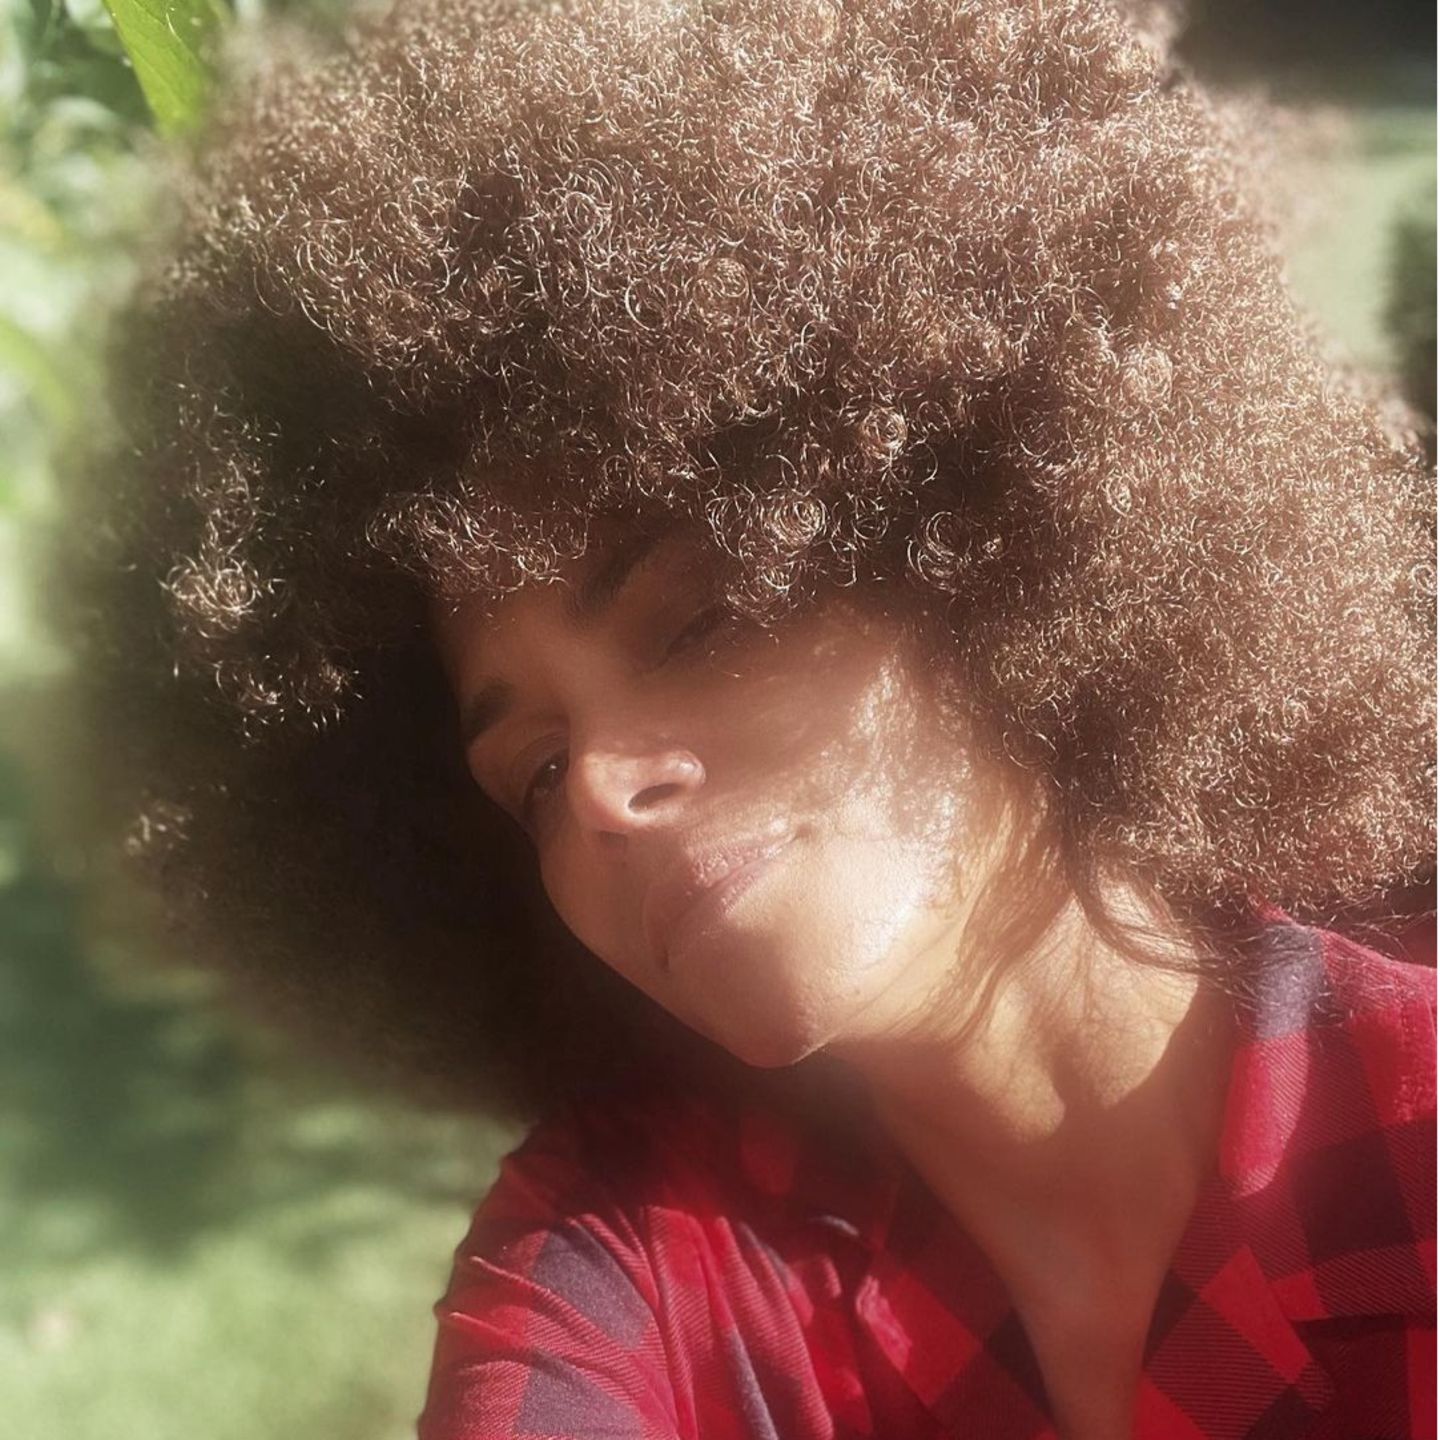 So hat man Halle Berry tatsächlich lange nicht mehr gesehen! Auf ihrem neusten Instagrambild zeigt die Schauspielerin: Sie trägt ihr Haar wieder natürlich mit Afro. Die braunen Locken hält sie lächelnd in die Kamera. Toller Look!